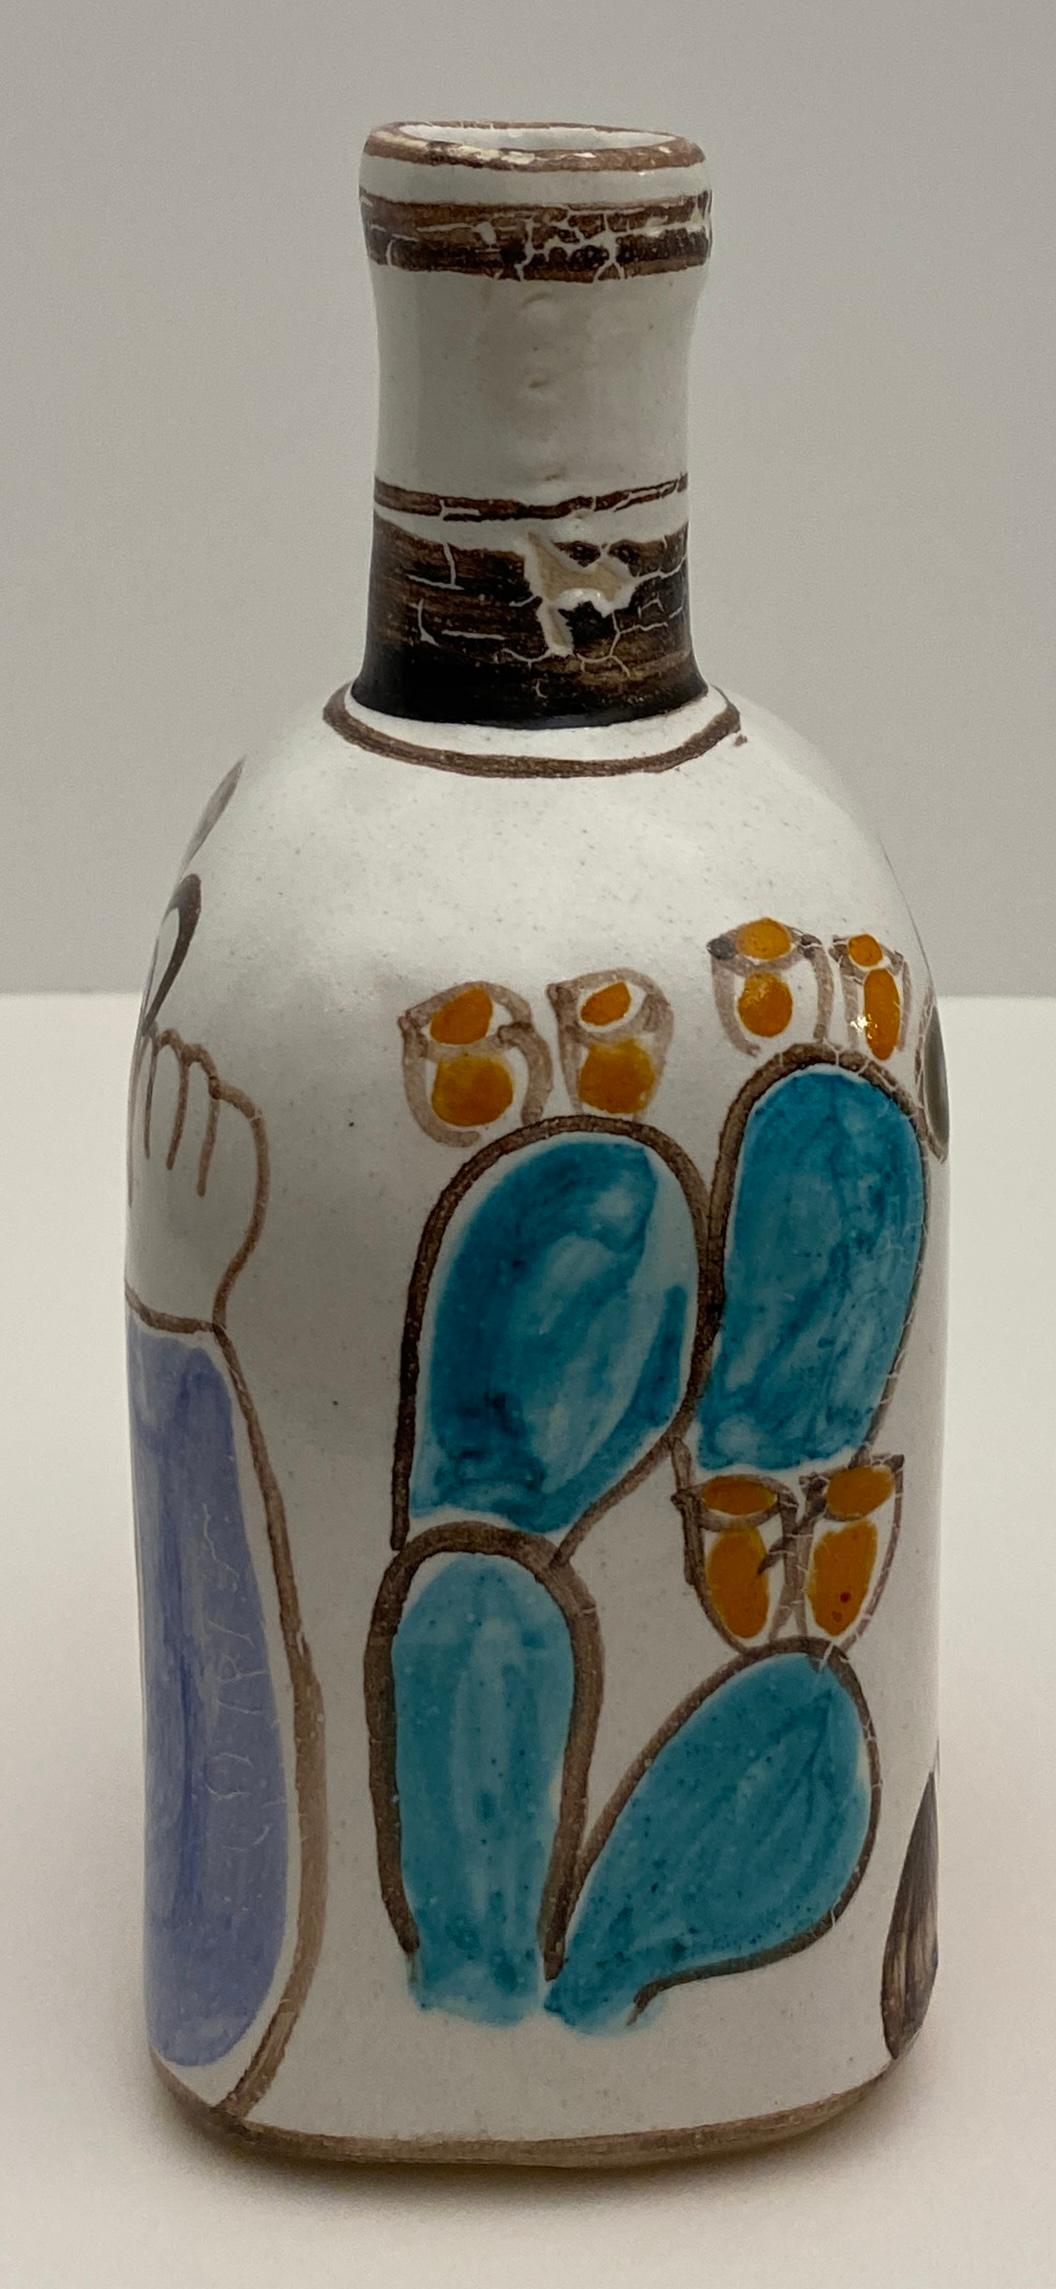 Einzigartige Vase, handgefertigt und handbemalt von Giovanni DeSimone.  Tolles Design mit skurrilen Bildern auf beiden Seiten.  

Dieses seltene, signierte und nummerierte Werk ist so farbenfroh wie die üblichen Werke von DeSimone. Ein sehr gut